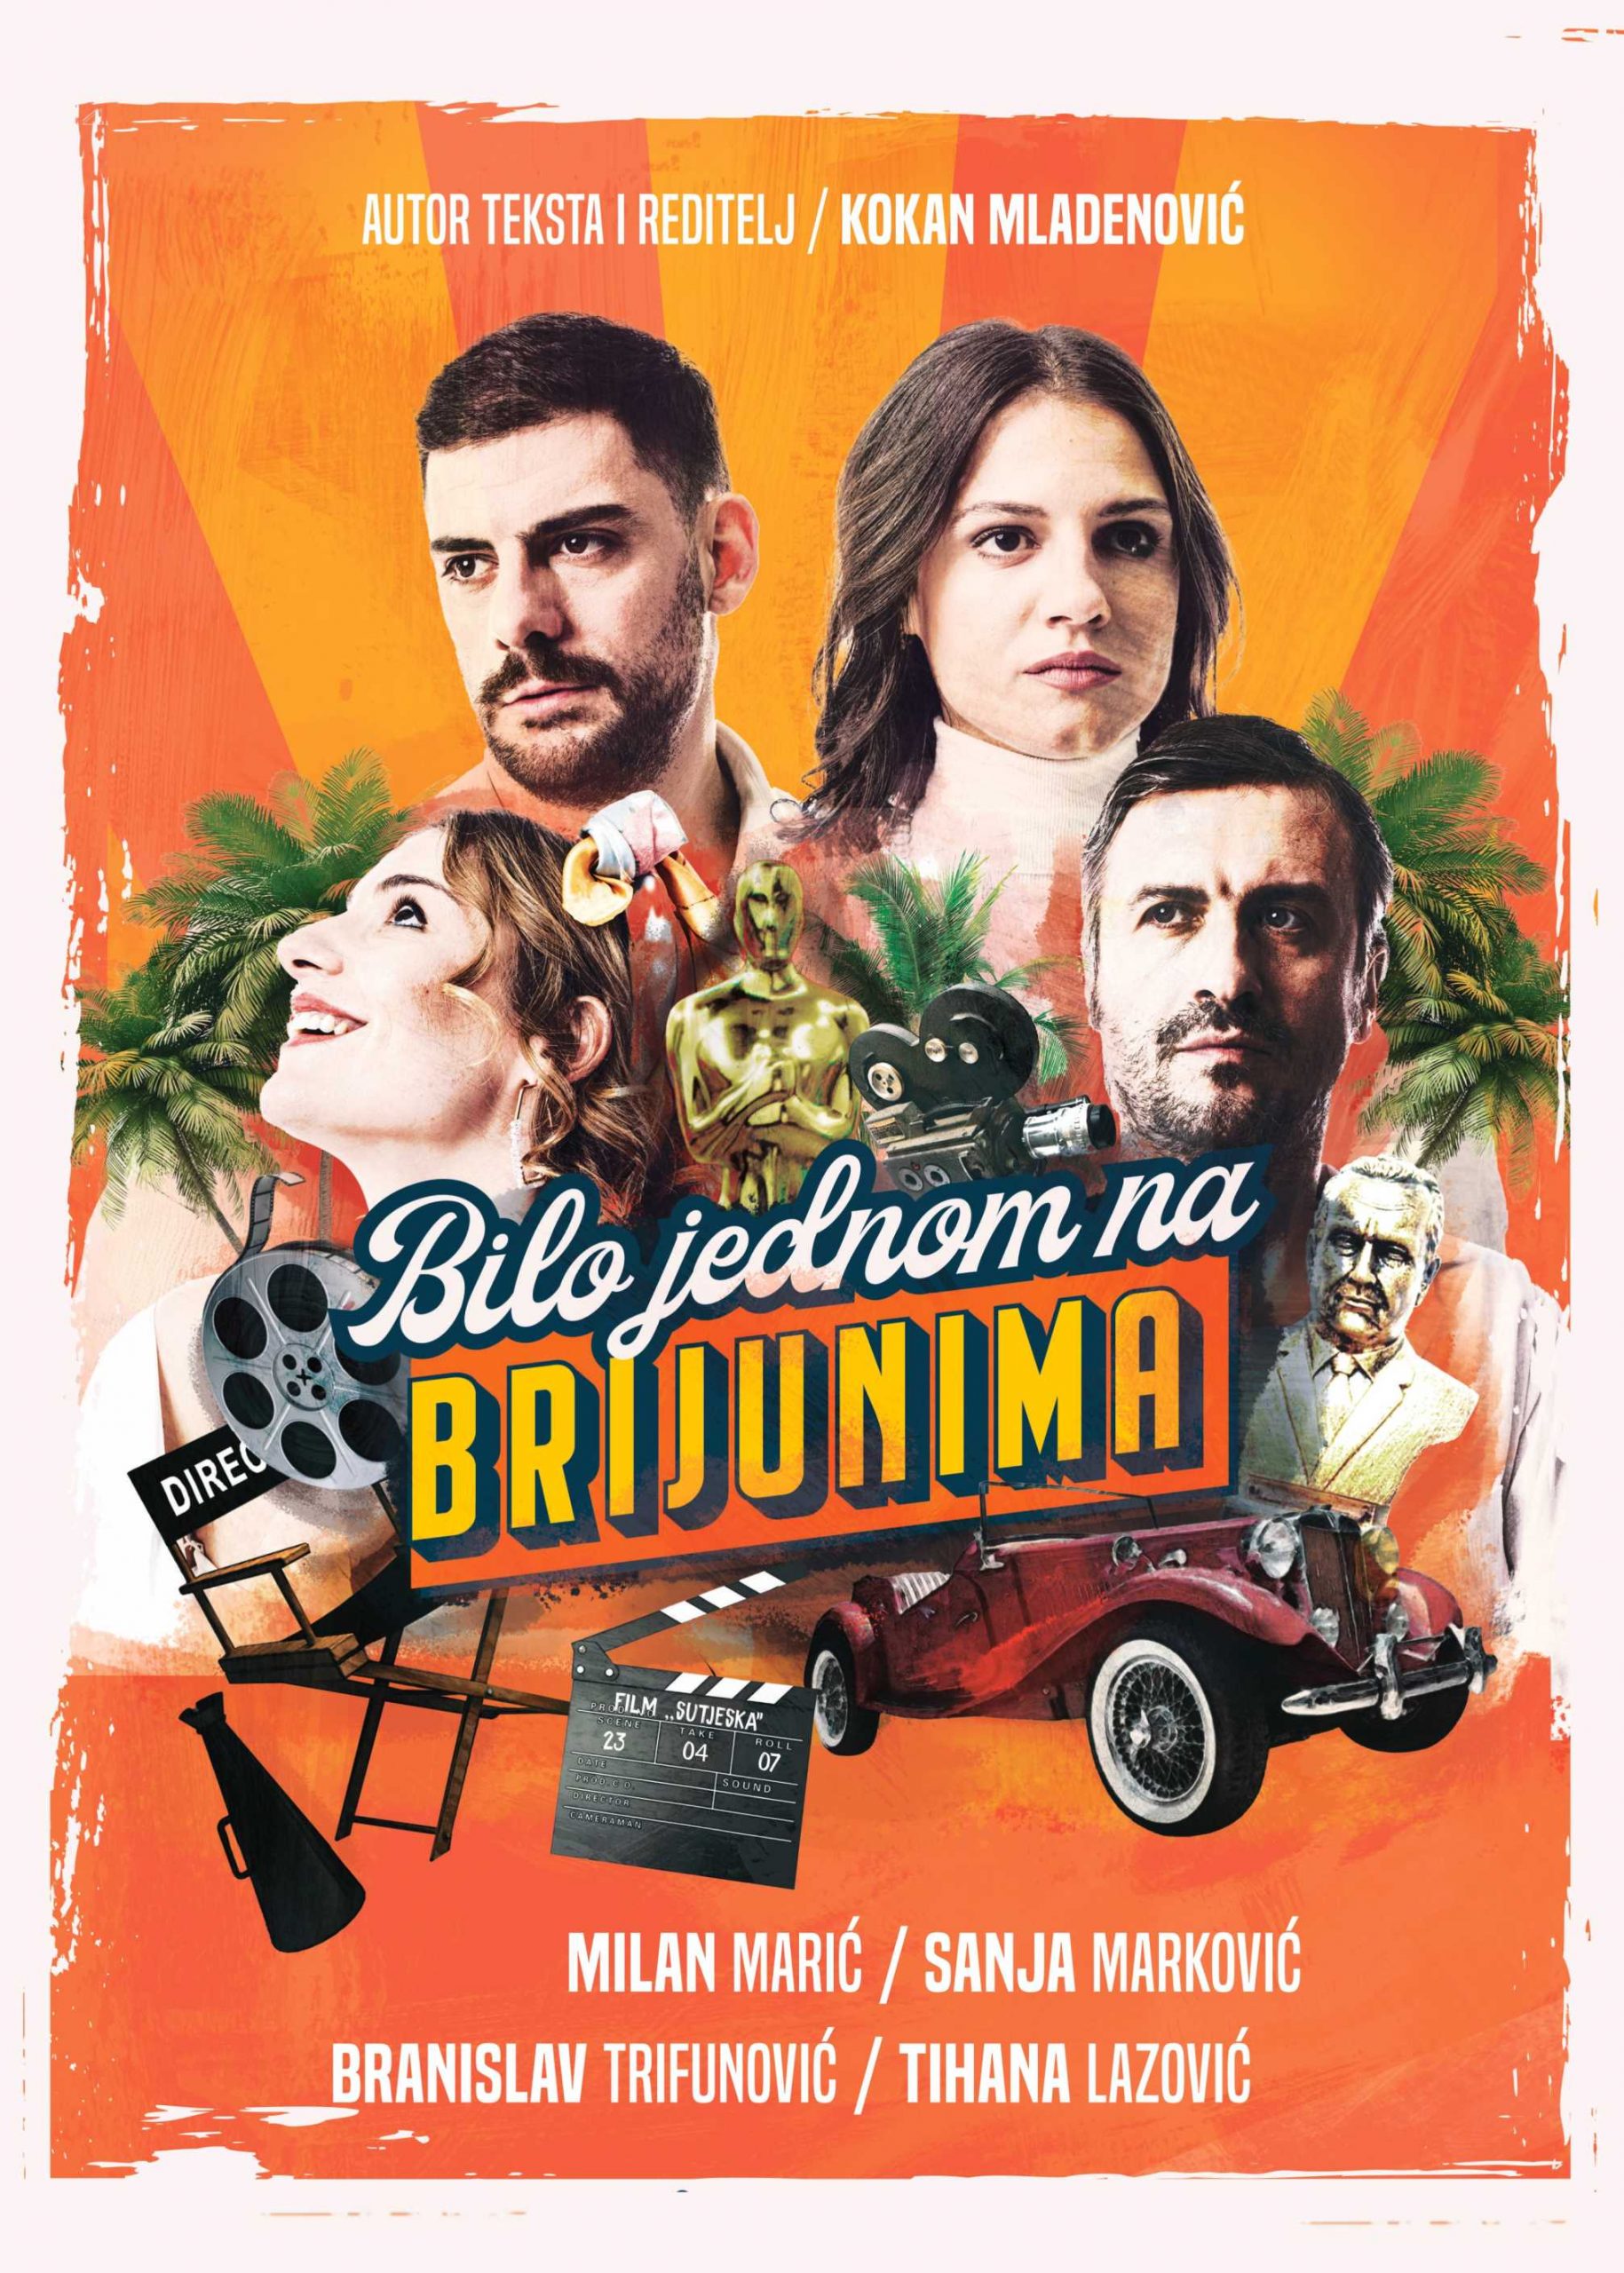 Nova beogradska HIT predstava „Bilo jednom na Brijunima" u studenom premijerno stiže u Rijeku!